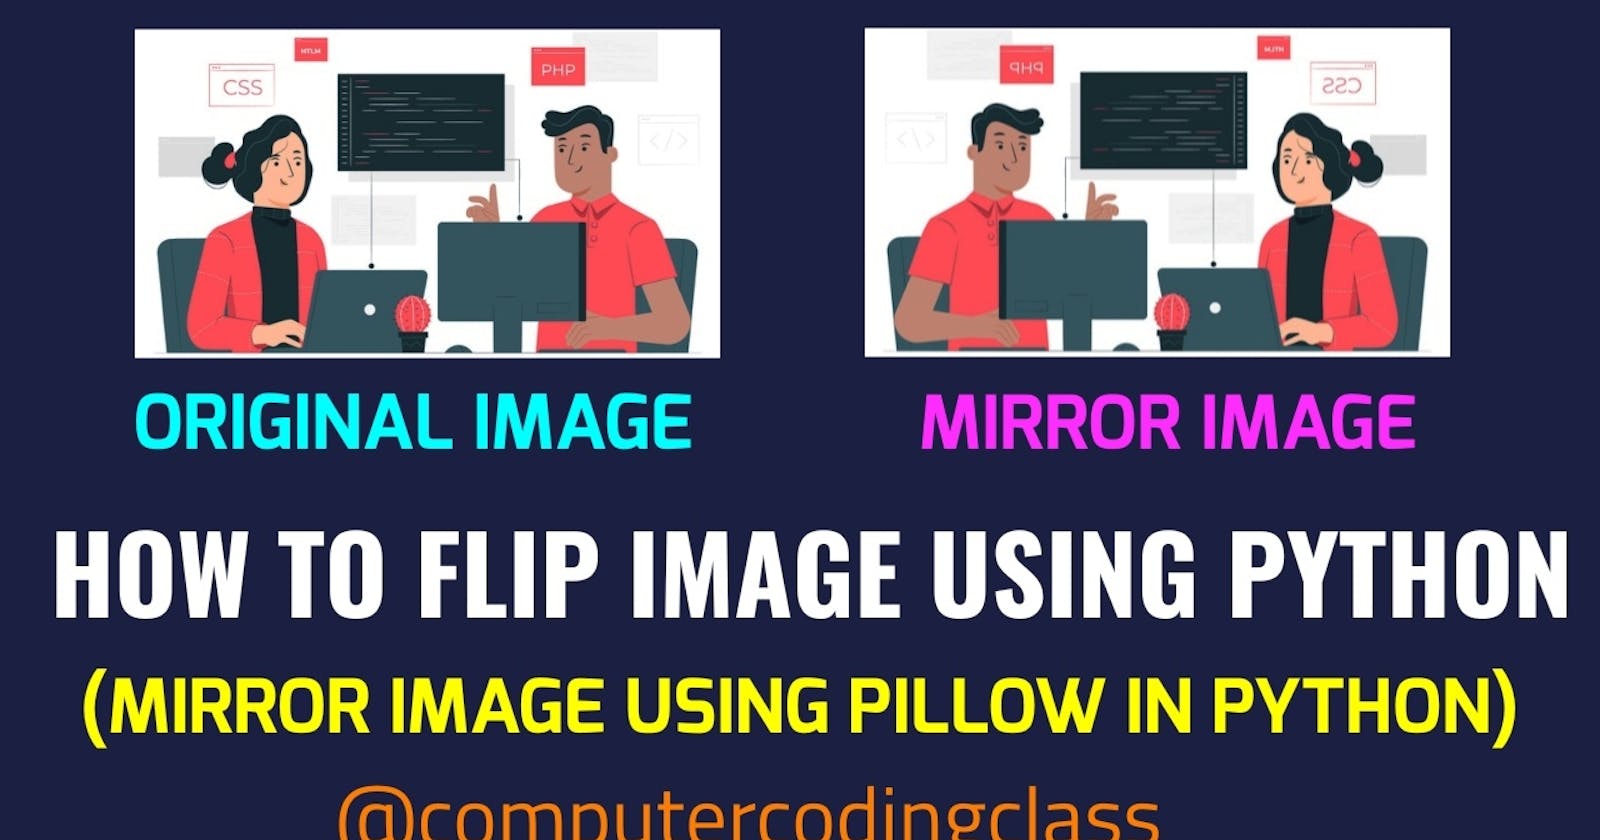 Mirror image in Python